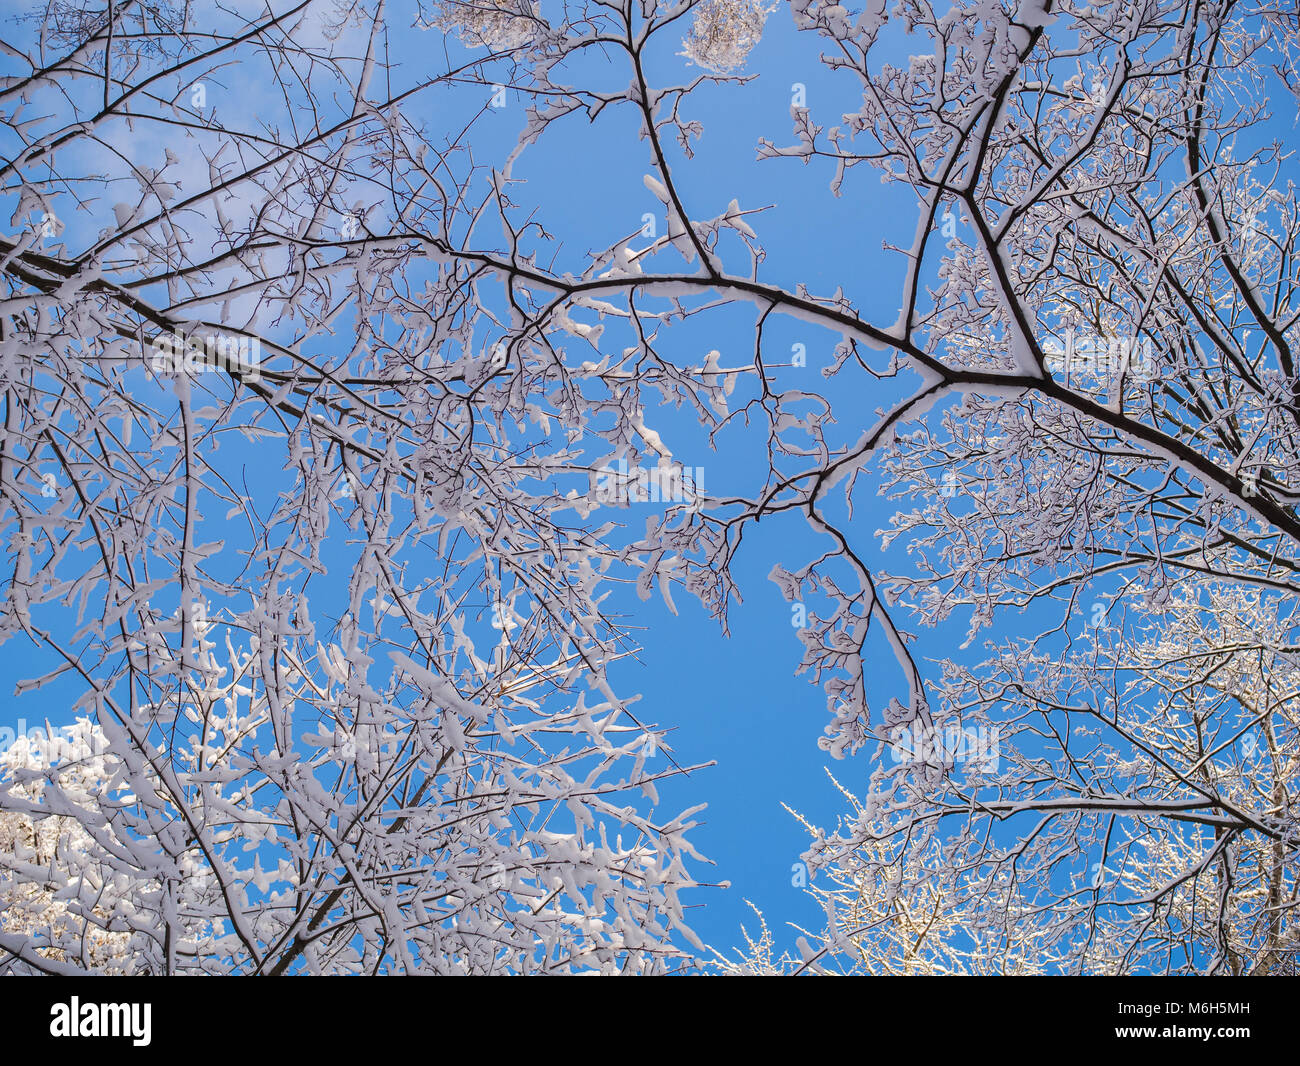 Fotos von Tops von Winter Bäume und blauer Himmel Stockfoto